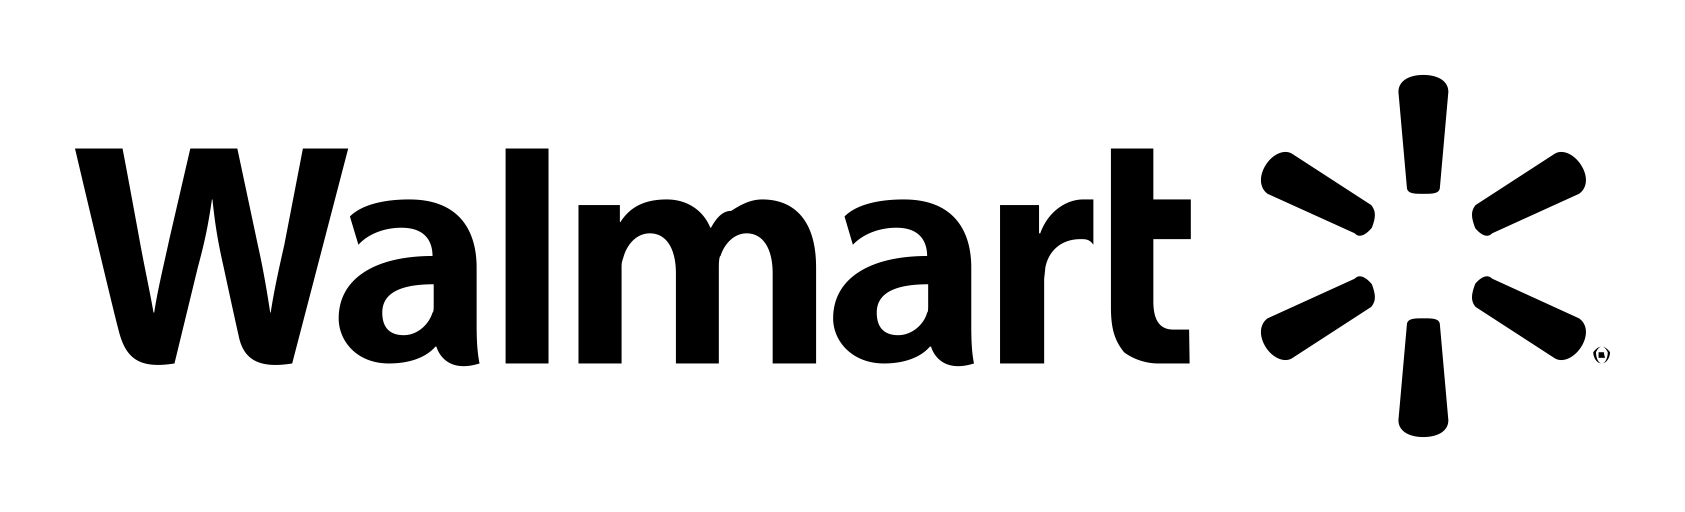 Wawlmart Logo - Walmart Logo Text transparent PNG - StickPNG